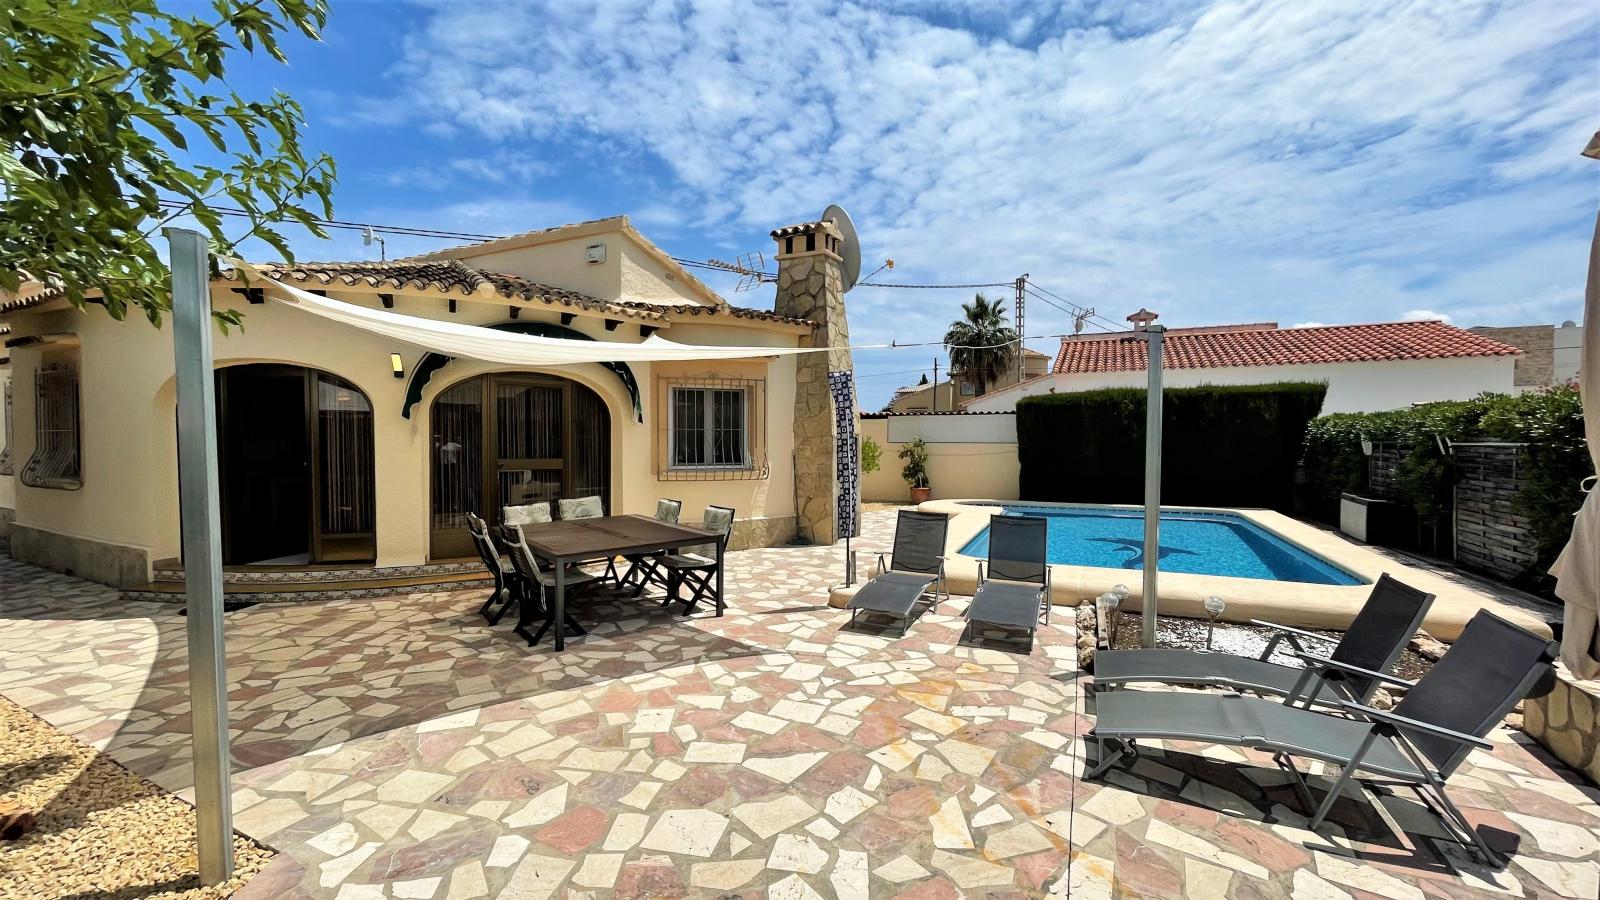 Hübsche Villa in Els Poblets, mit Pool, Zentralheizung, Klimaanlage , Wintergarten und vieles mehr!